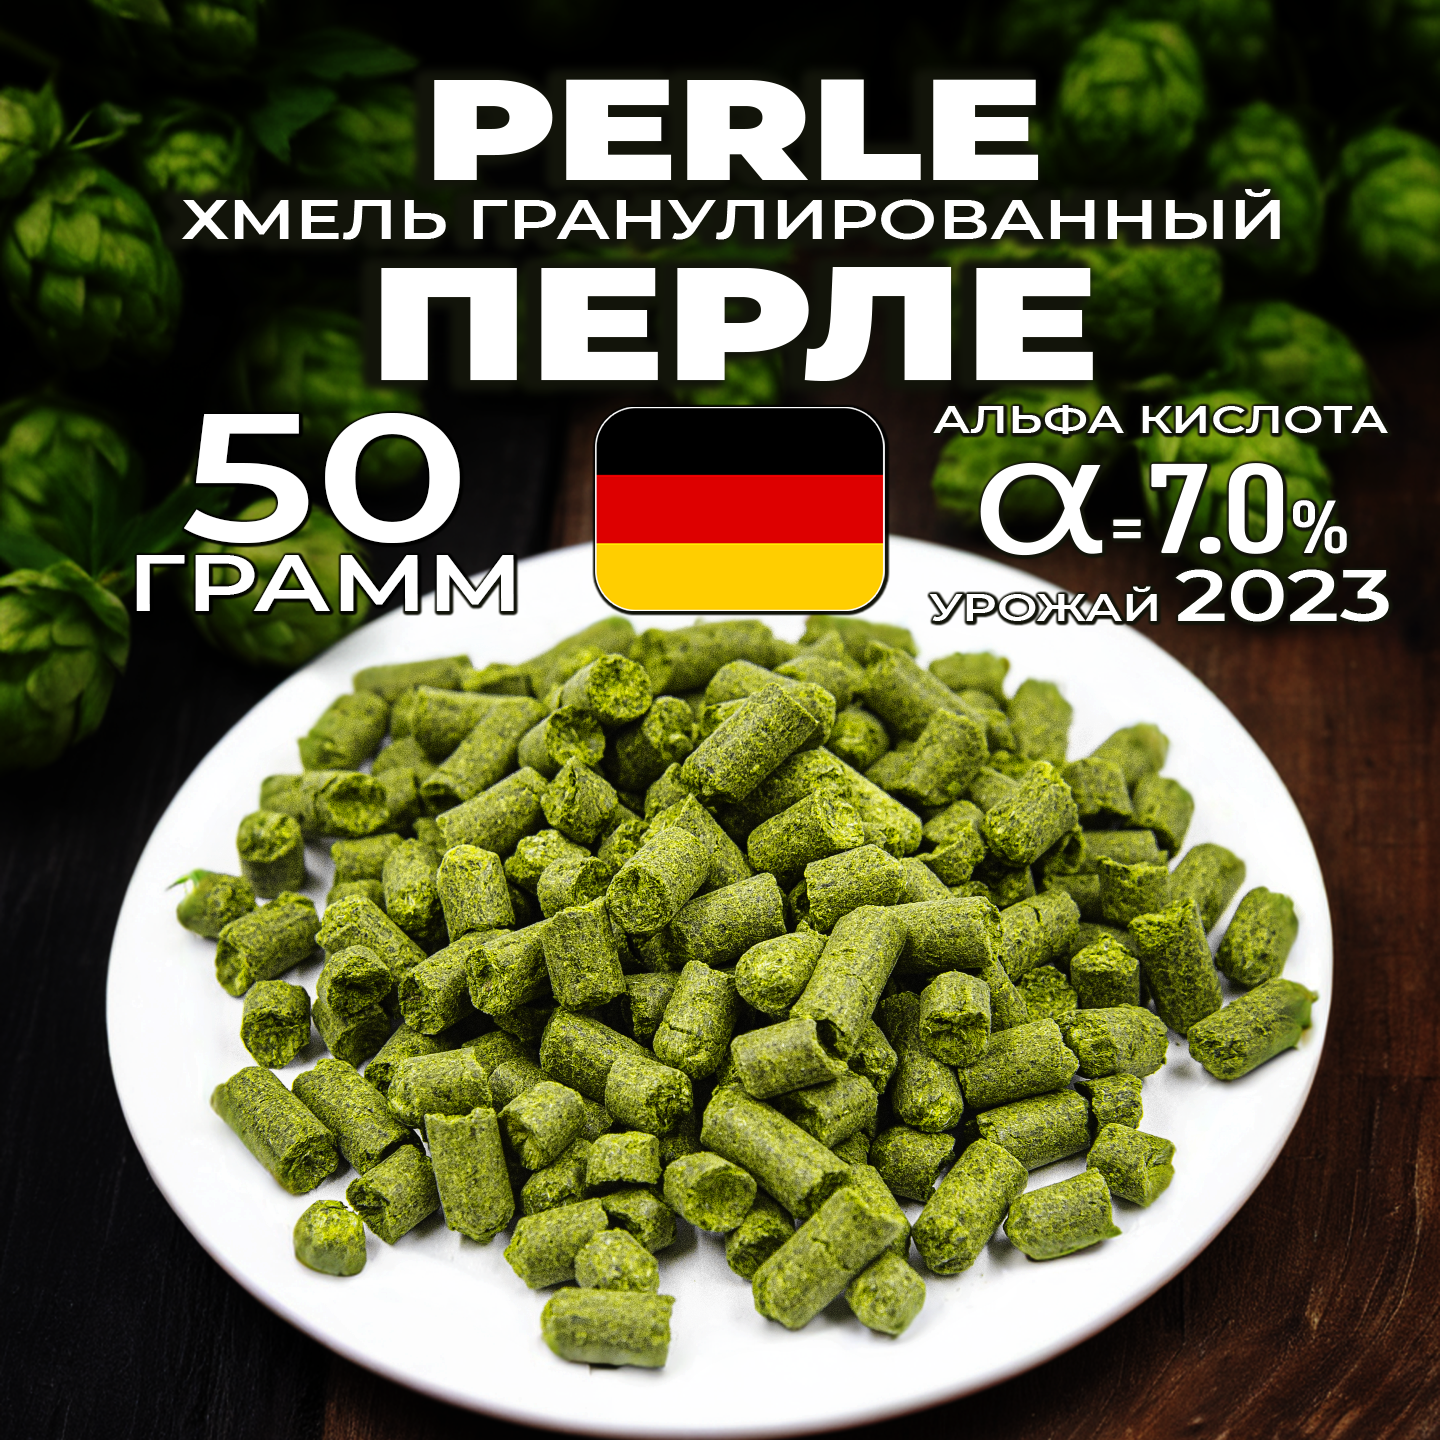 Хмель для пива Перле (Perle) гранулированный, горько-ароматный, 50 г